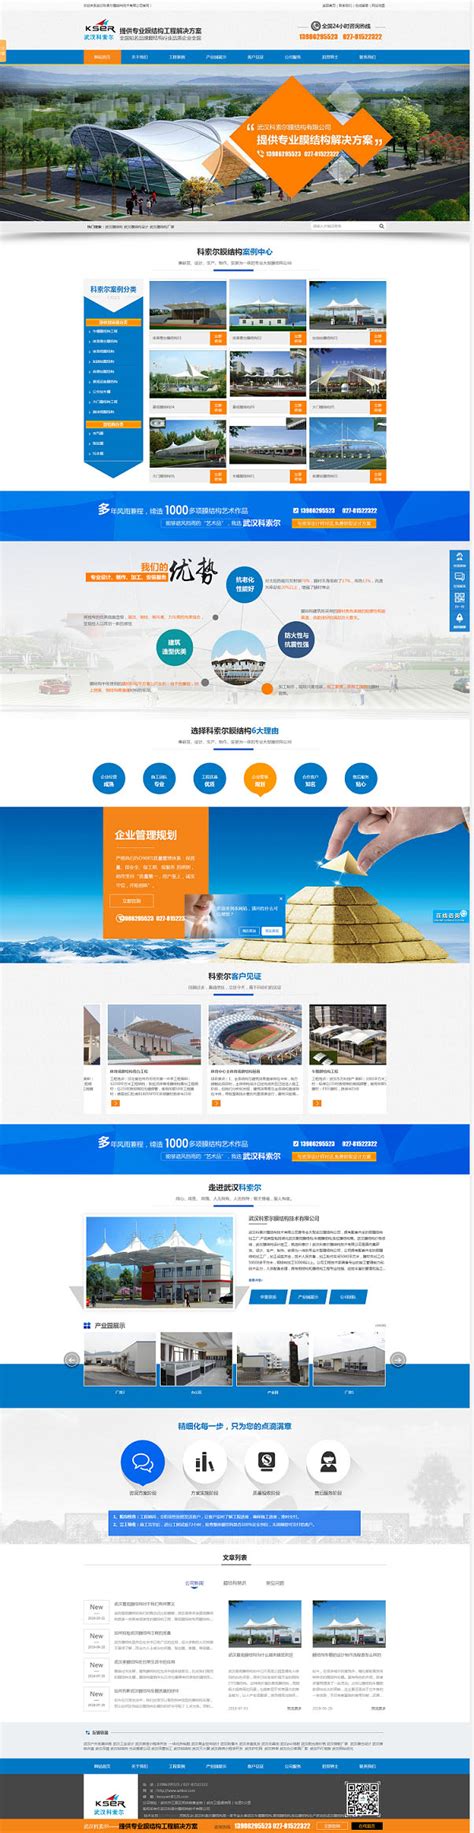 武汉网站建设空间优化公司